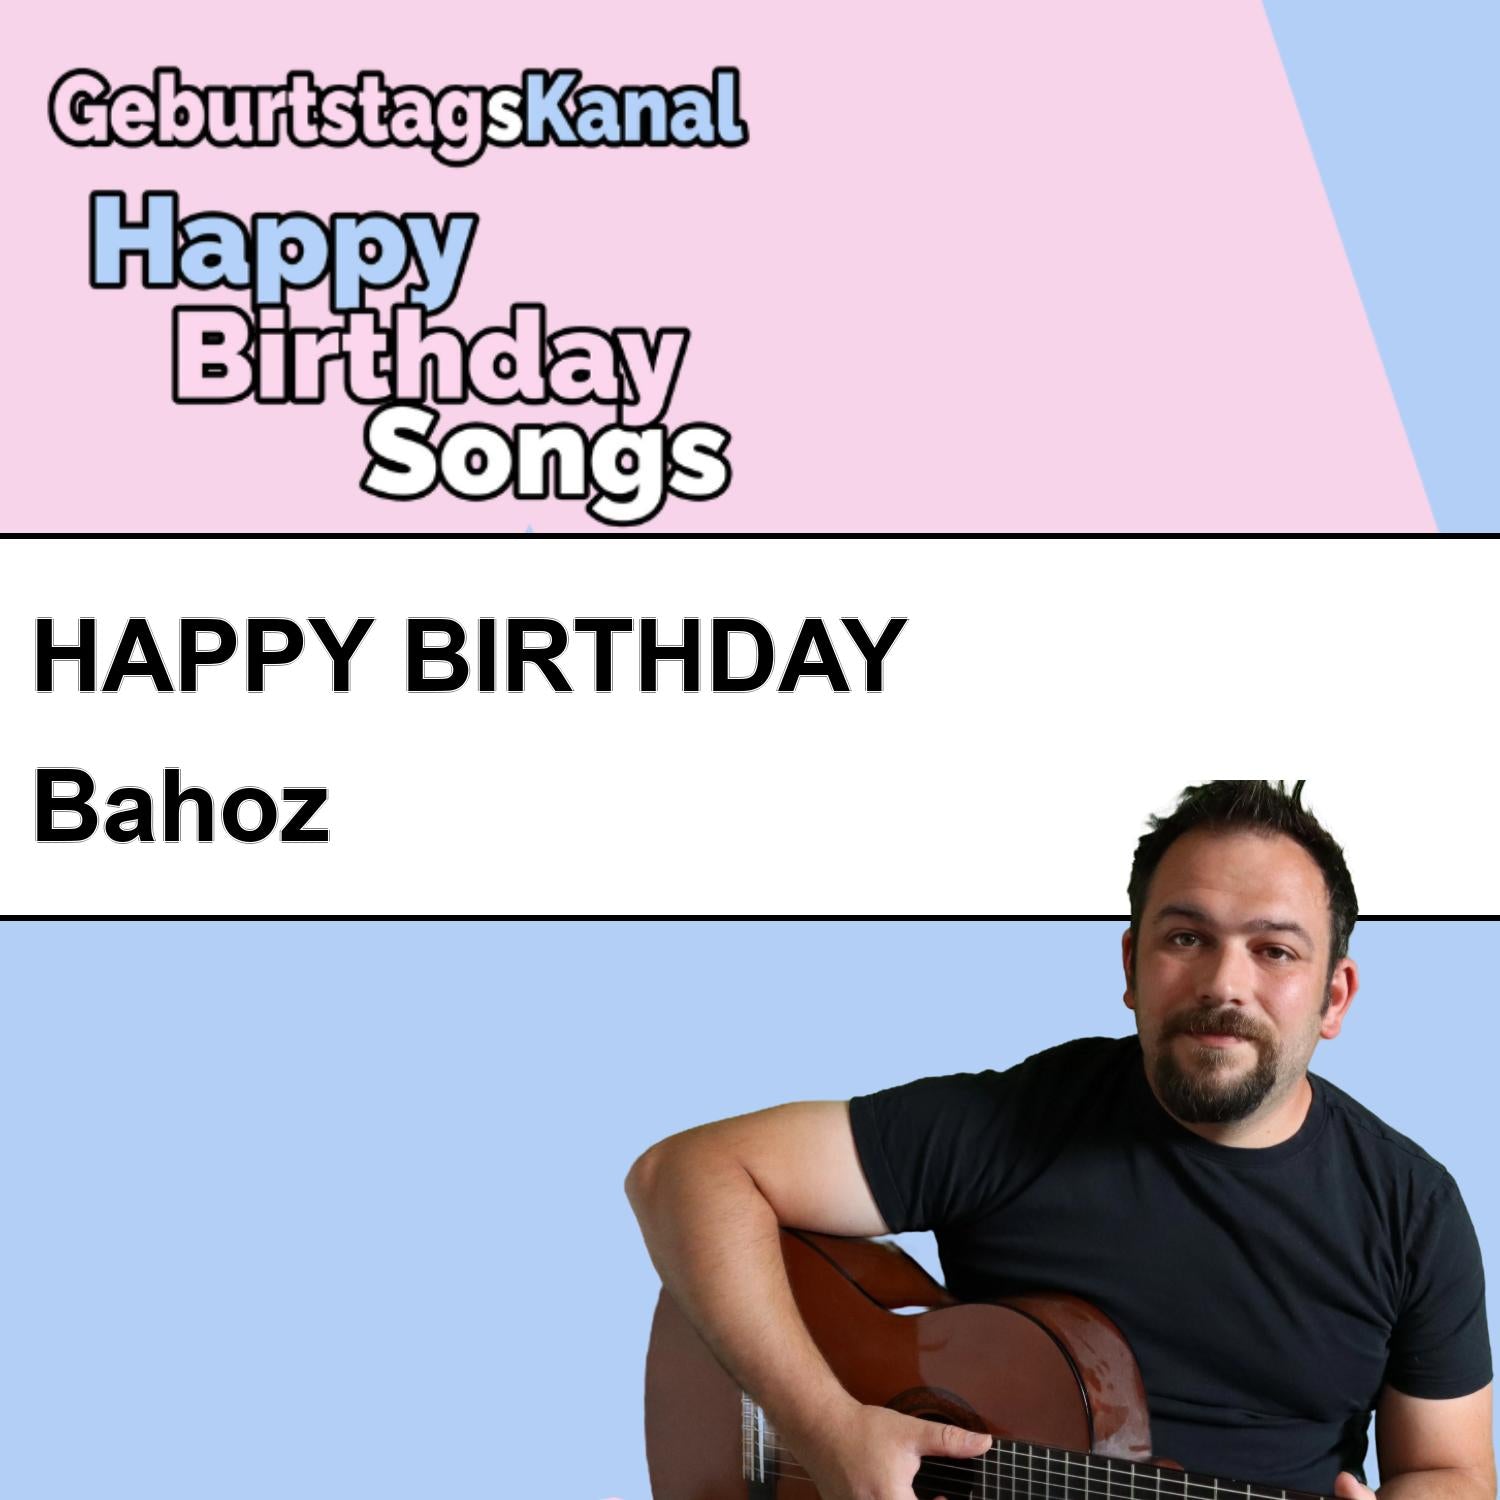 Produktbild Happy Birthday to you Bahoz mit Wunschgrußbotschaft